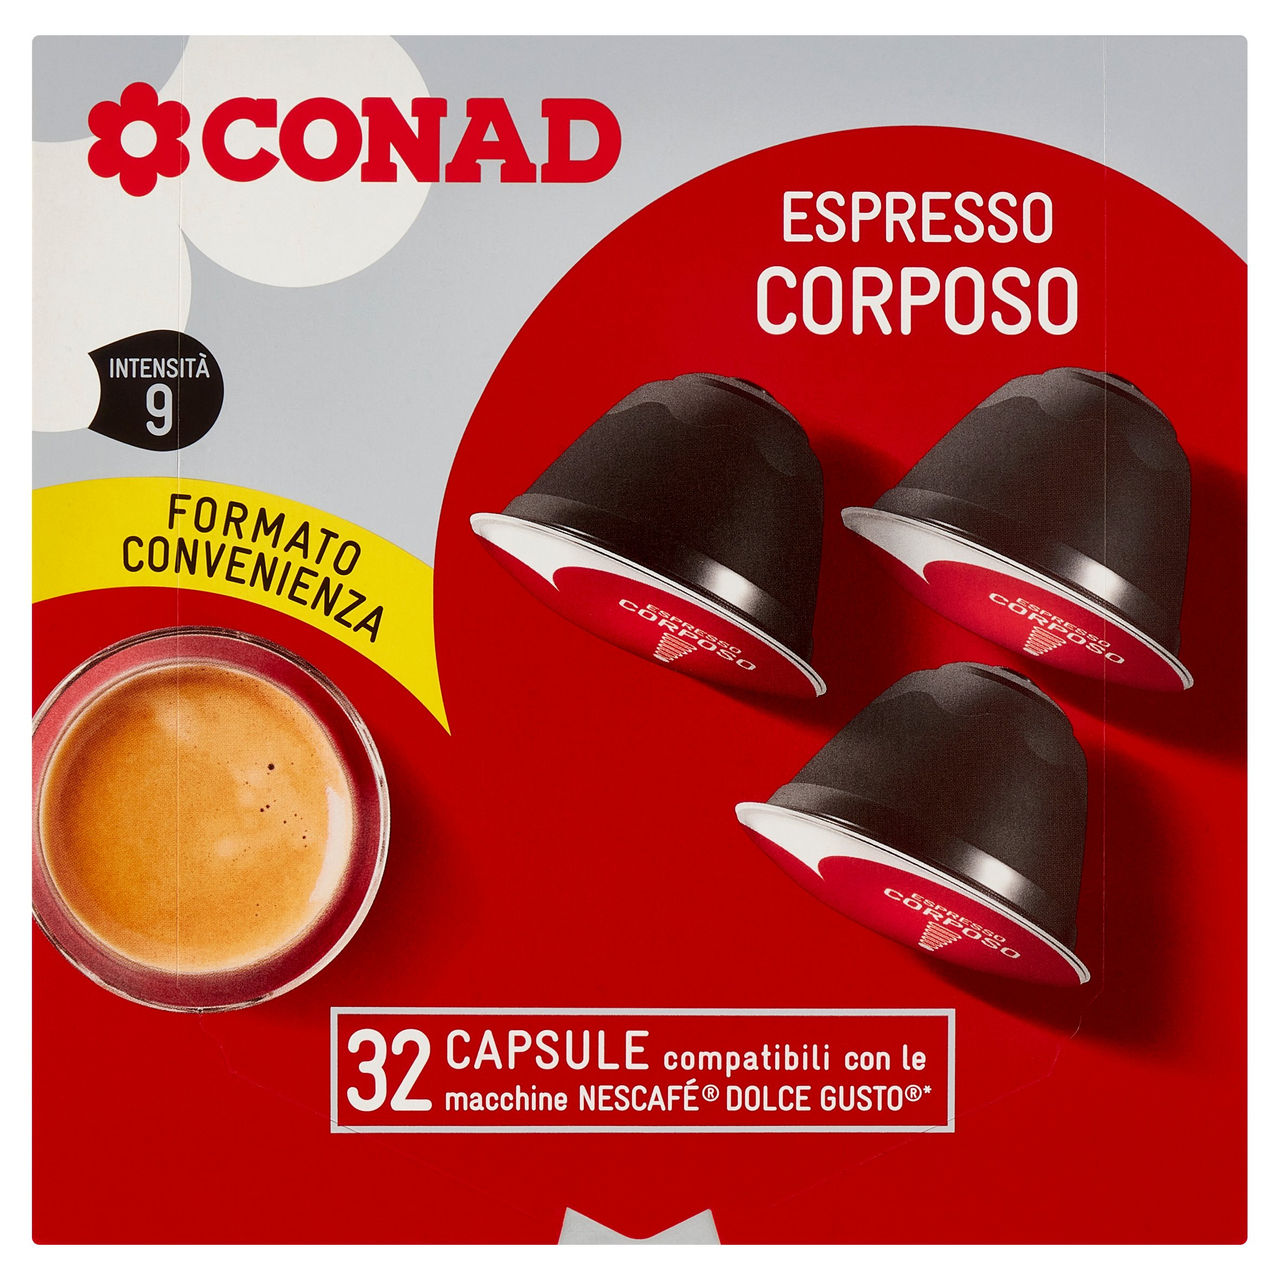 Espresso Corposo capsule Nescafè Dolce Gusto Conad